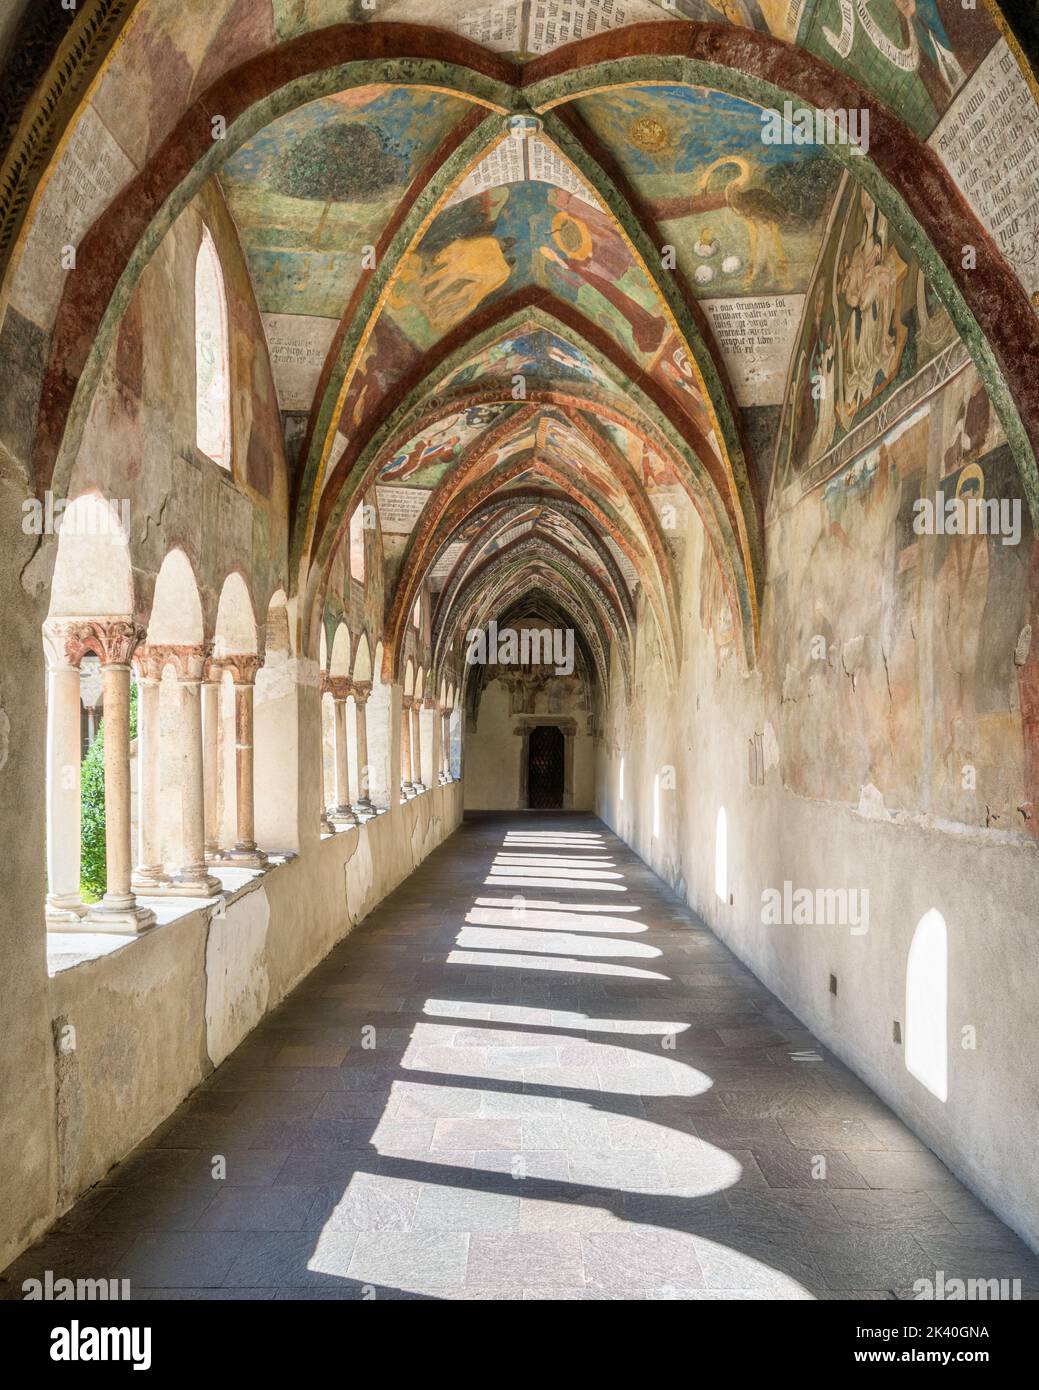 El maravilloso claustro con frescos en el Duomo de Bressanone. Provincia de Bolzano, Trentino Alto Adige, Italia. Foto de stock